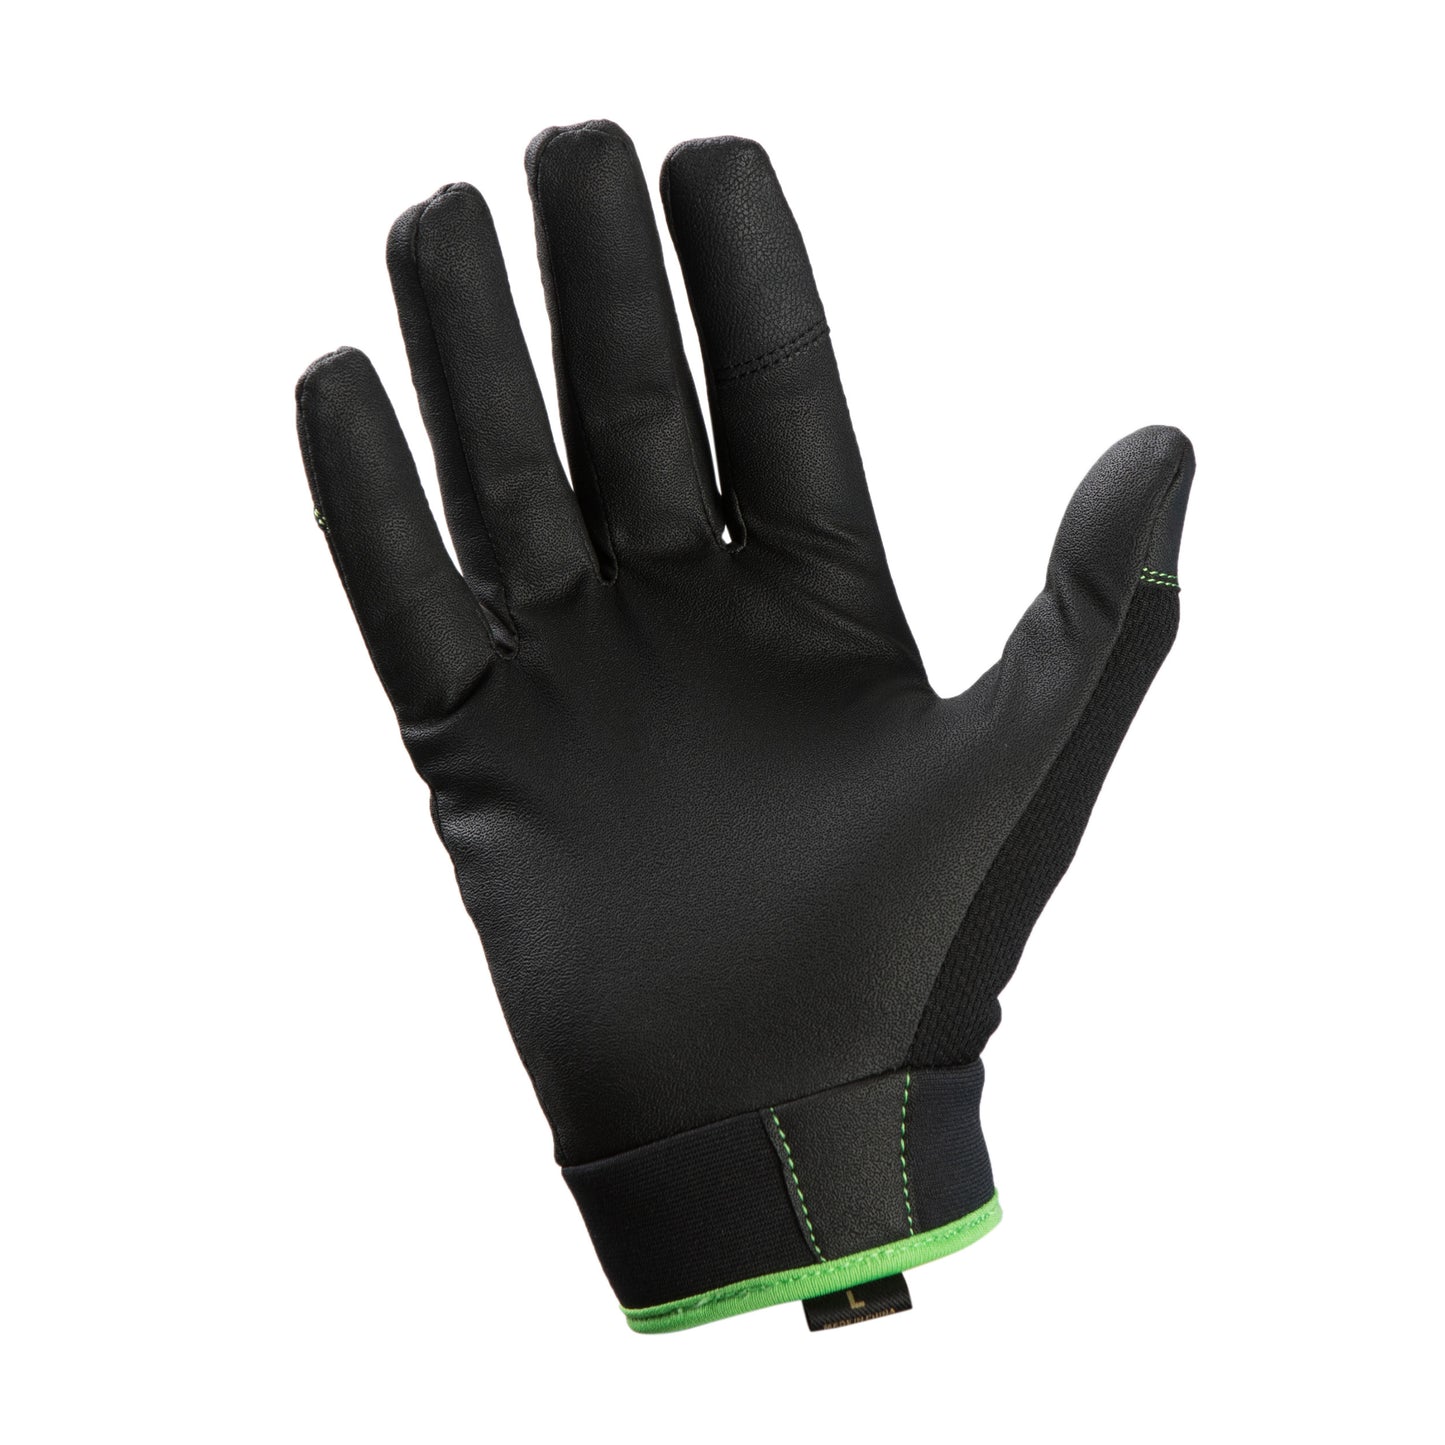 Second Skin Gloves, Black, XXL alt 1